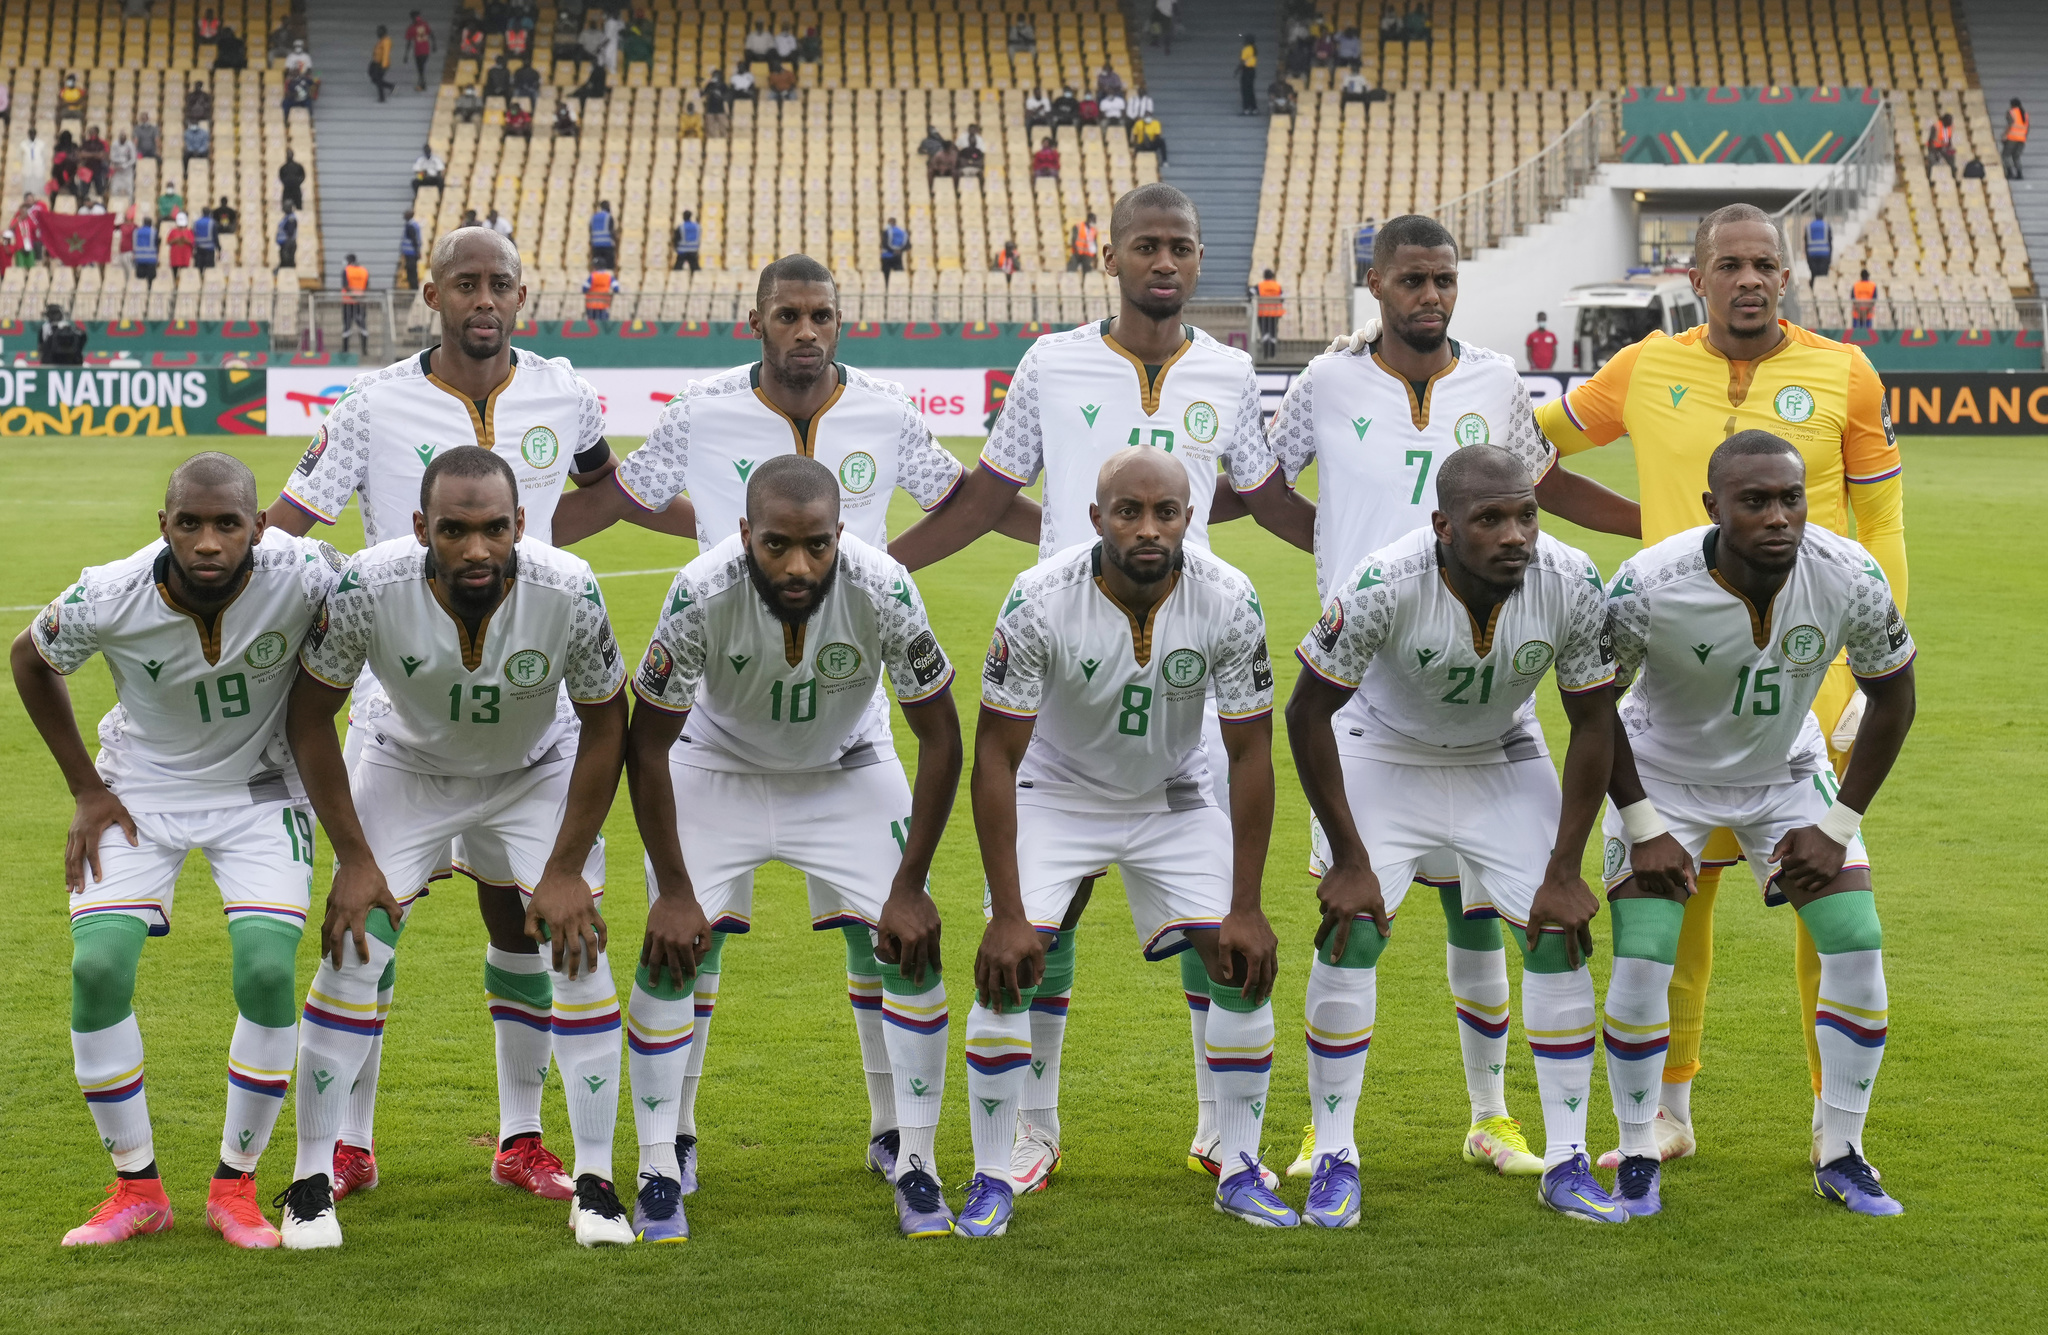 La alineación de Islas Comoras durante la Copa África 2021